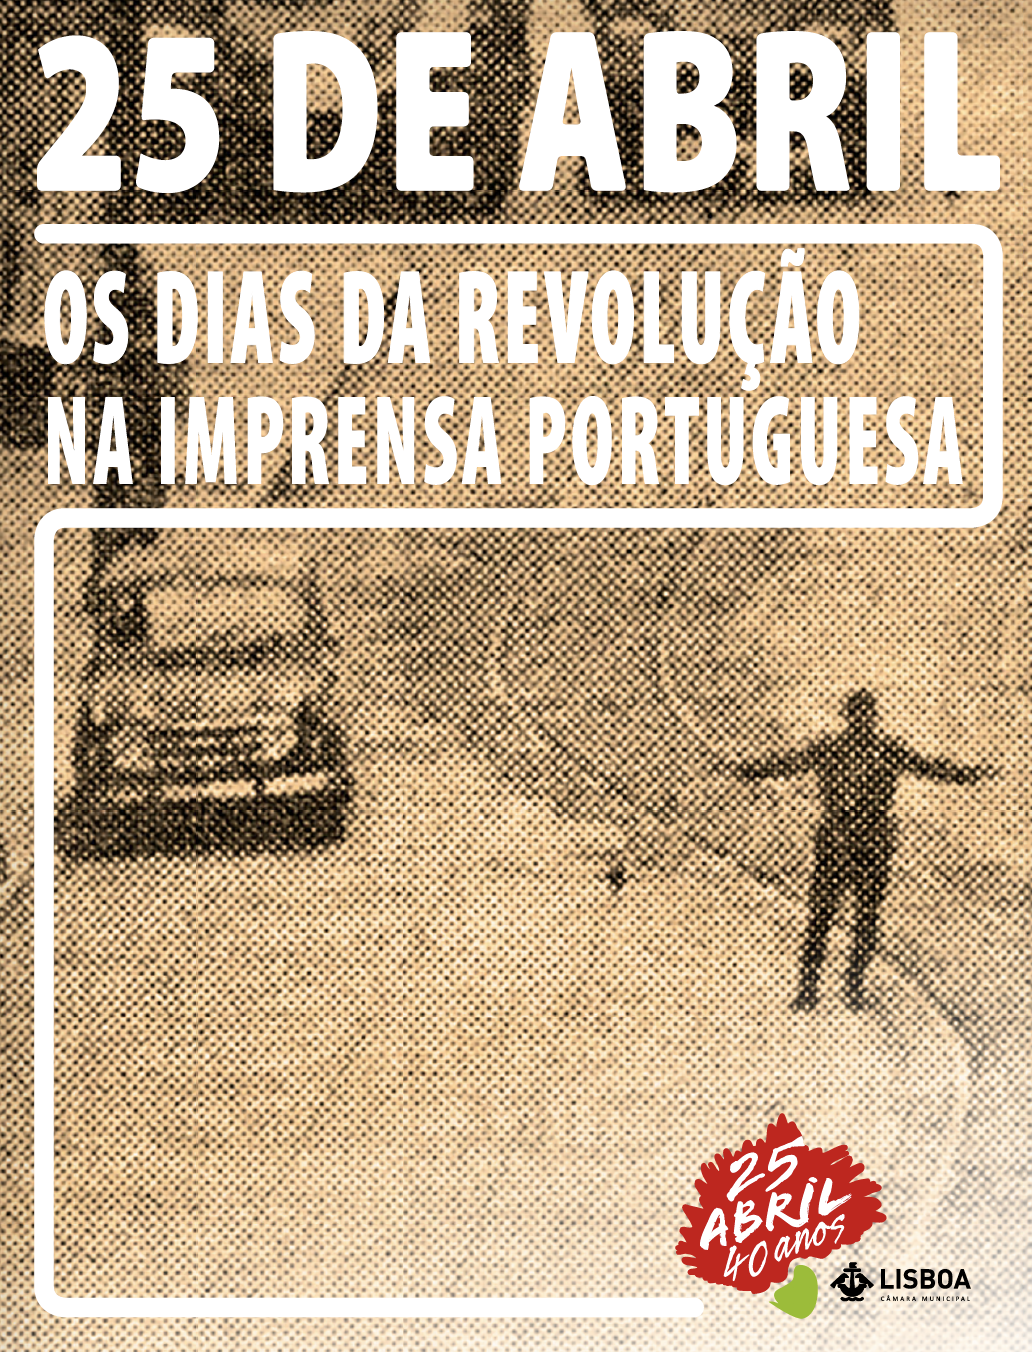 Os dias da Revolução na Imprensa Portuguesa